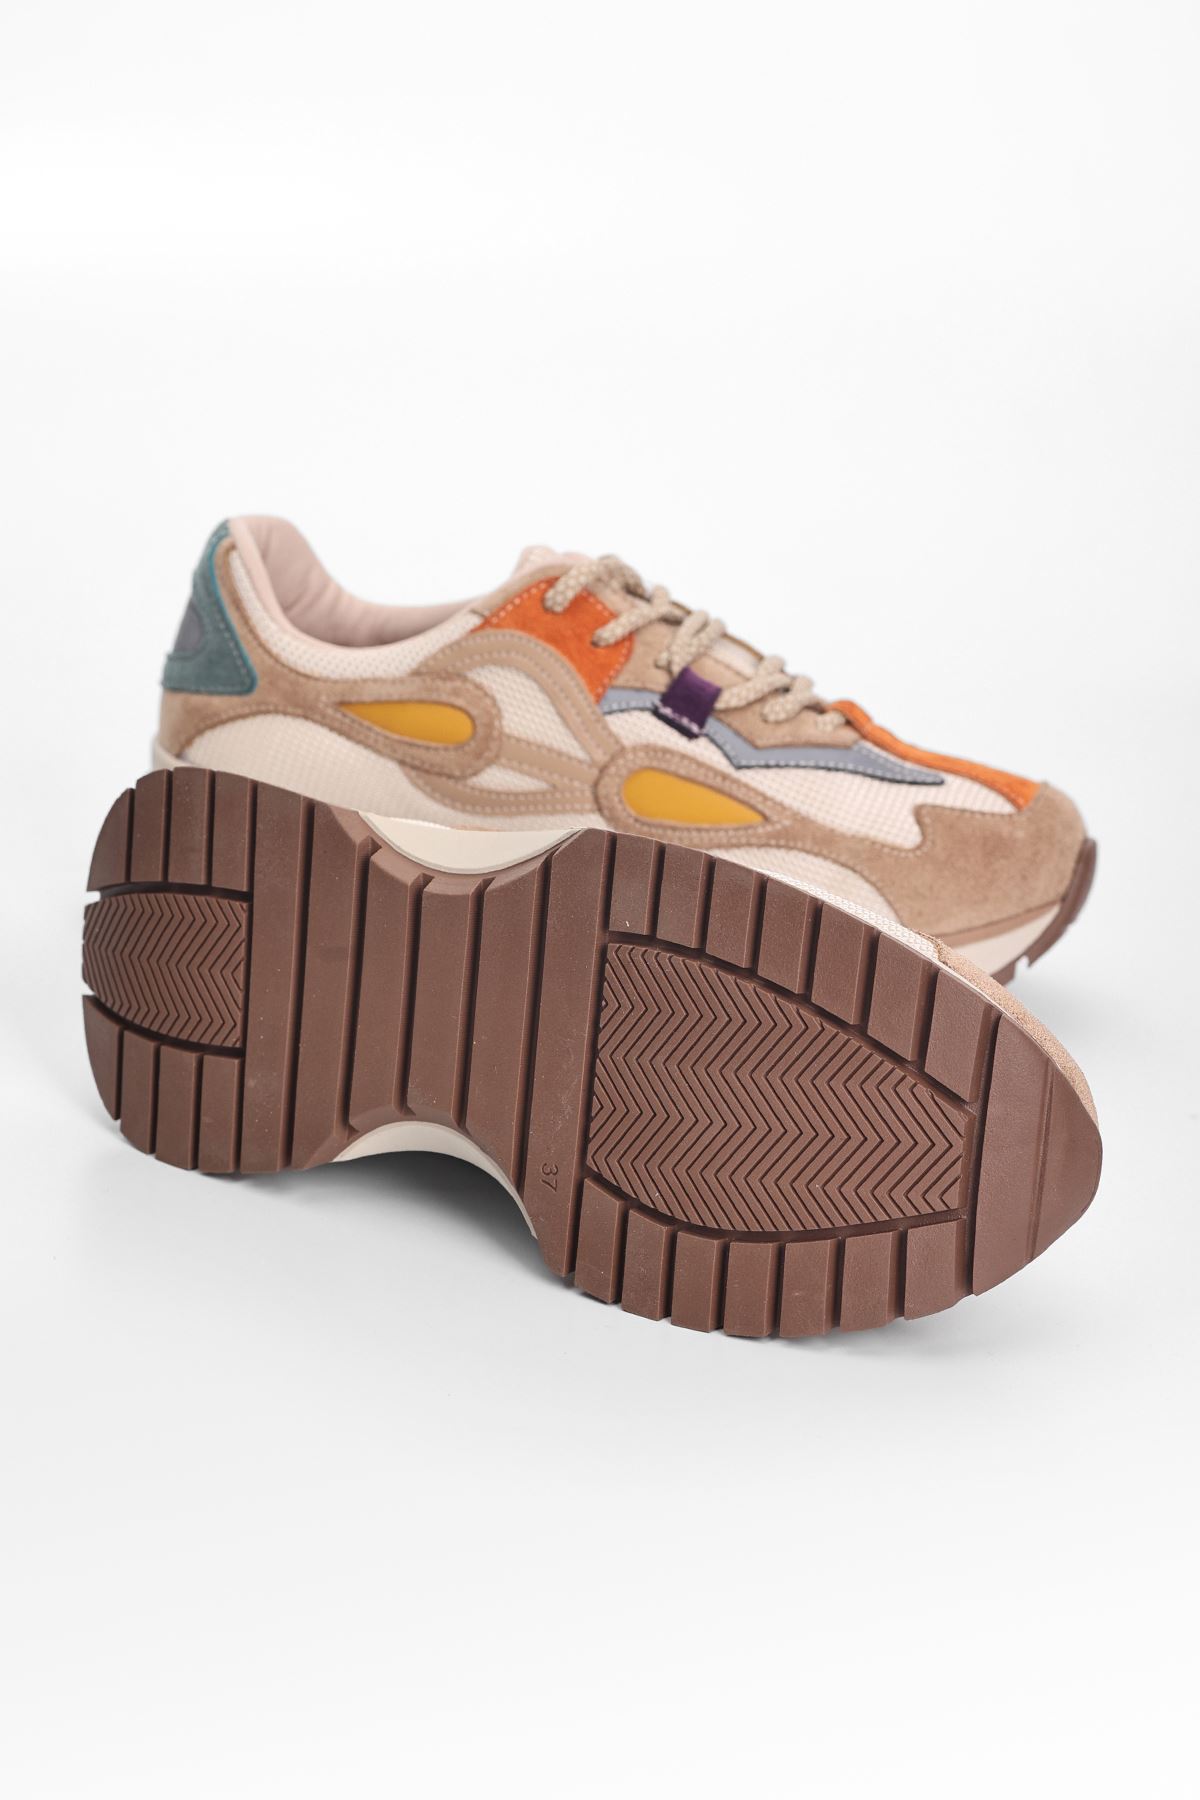 Hoven File Detaylı Bağcıklı Kadın Spor Ayakkabı Taba